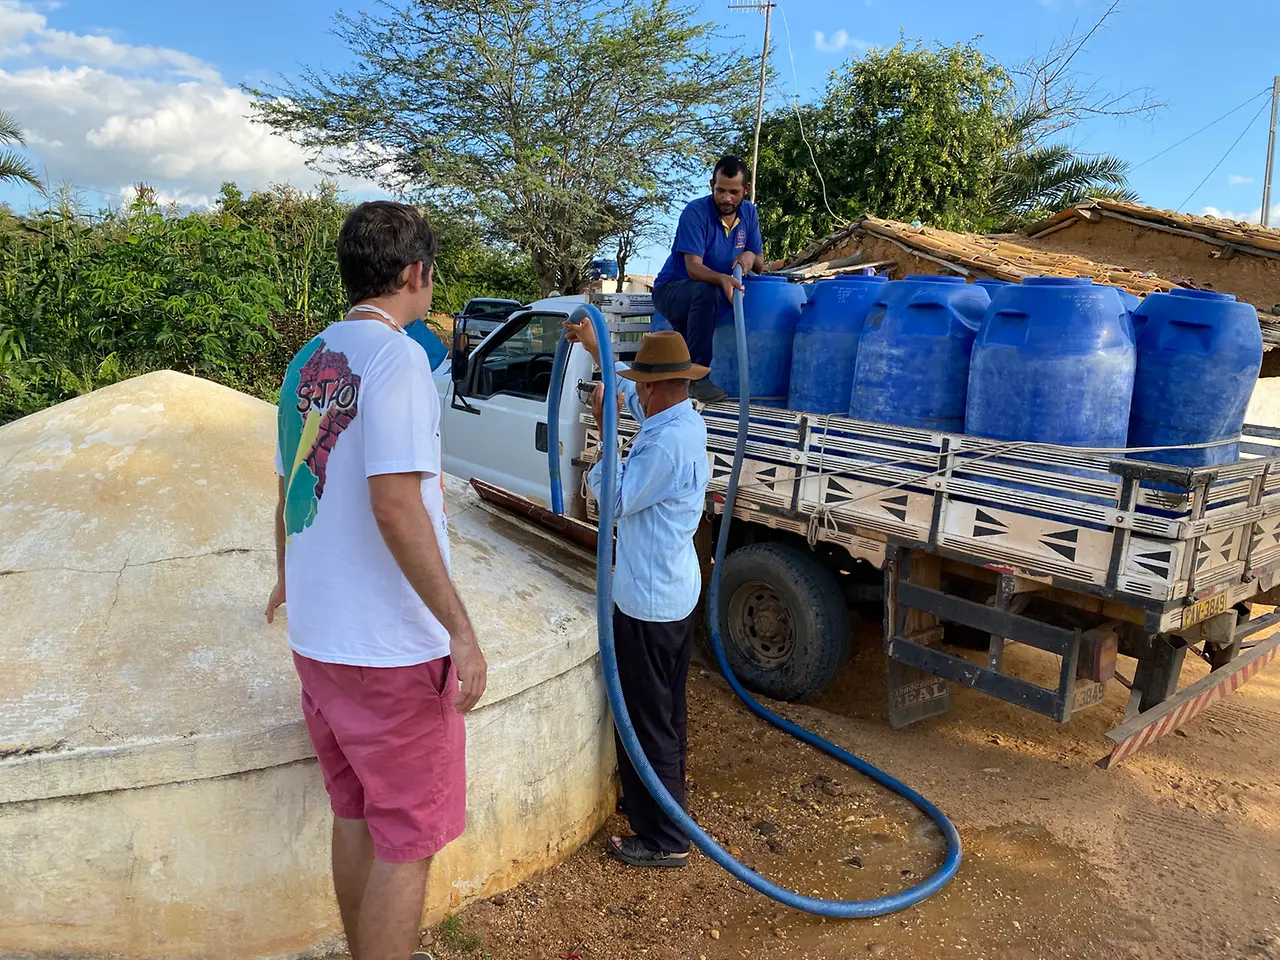 Amigos do Bem, en Brasil, distribuyó 60,000 canastas de alimentos básicos, 20,000 kits de higiene y logró abastecer cisternas con 25 millones de litros de agua.